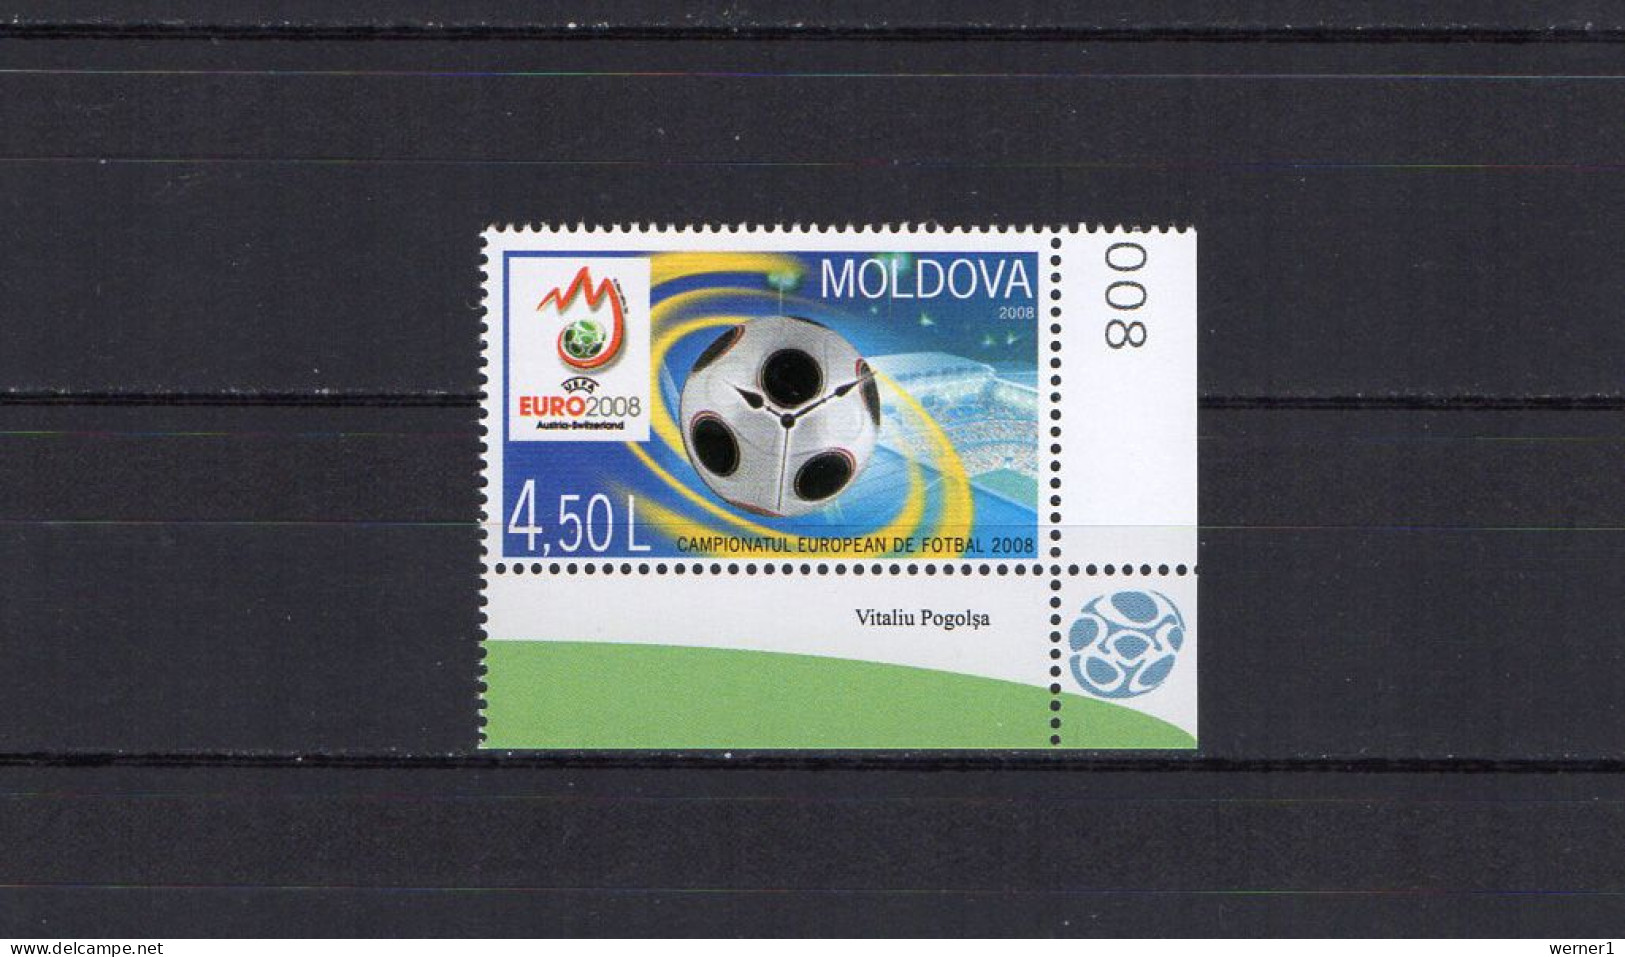 Moldova 2008 Football Soccer European Championship Stamp MNH - Fußball-Europameisterschaft (UEFA)